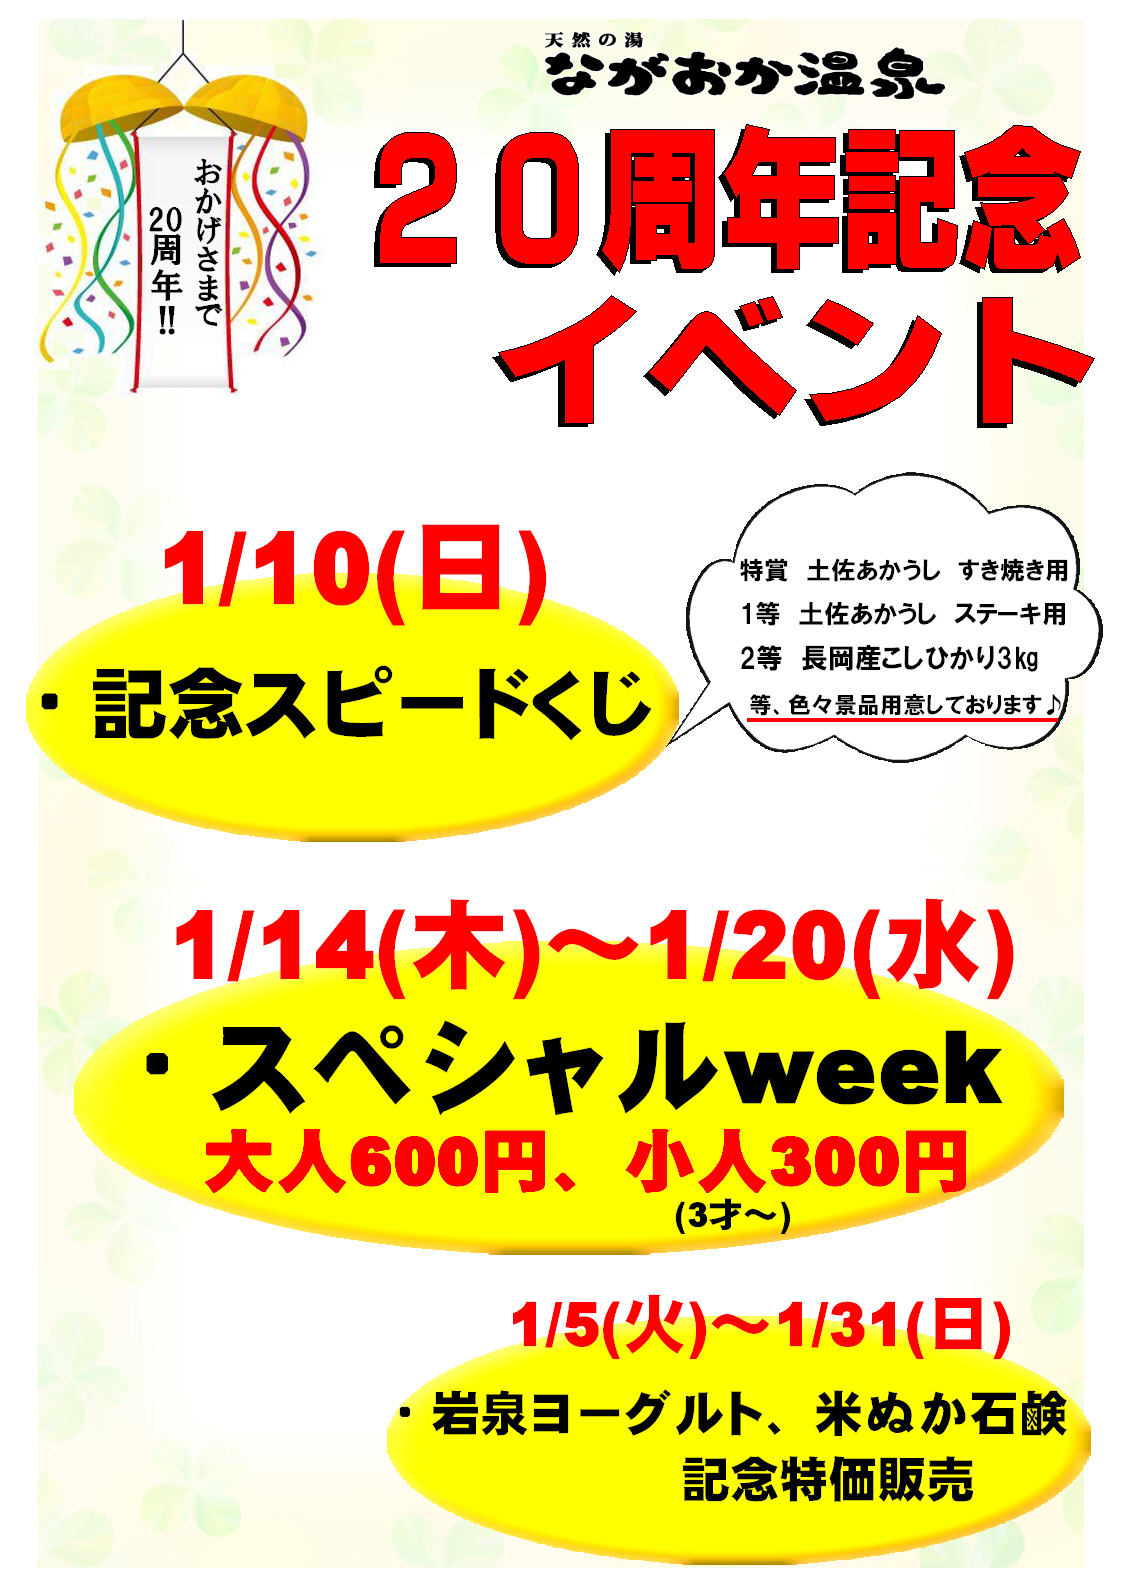 天然の湯ながおか温泉 1月限定 周年記念イベント高知県南国市 天然の湯ながおか温泉